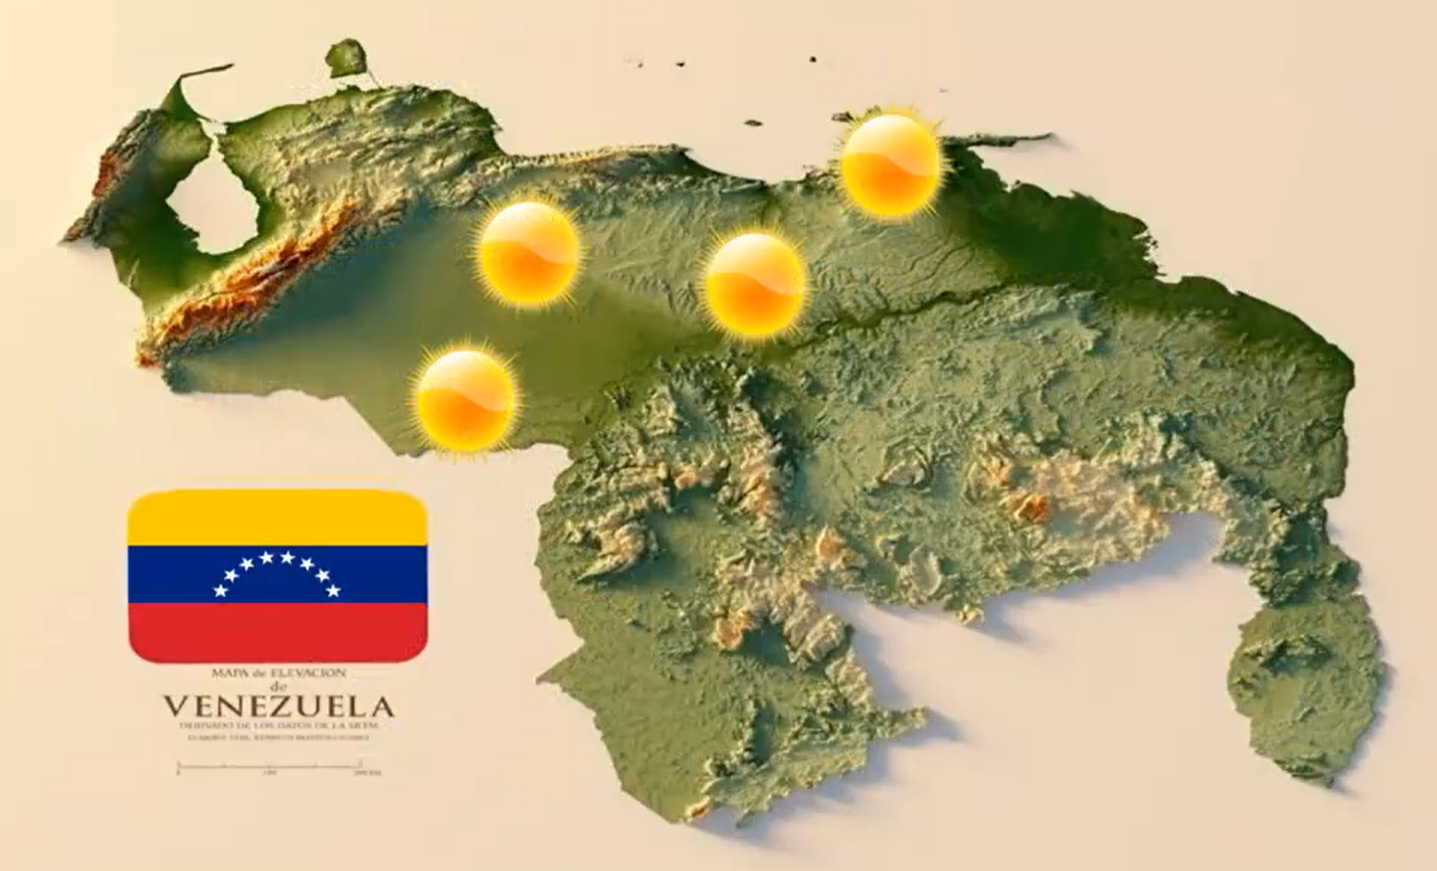 Inameh prevé poca nubosidad y baja probabilidad de lluvia en Venezuela este #27Mar